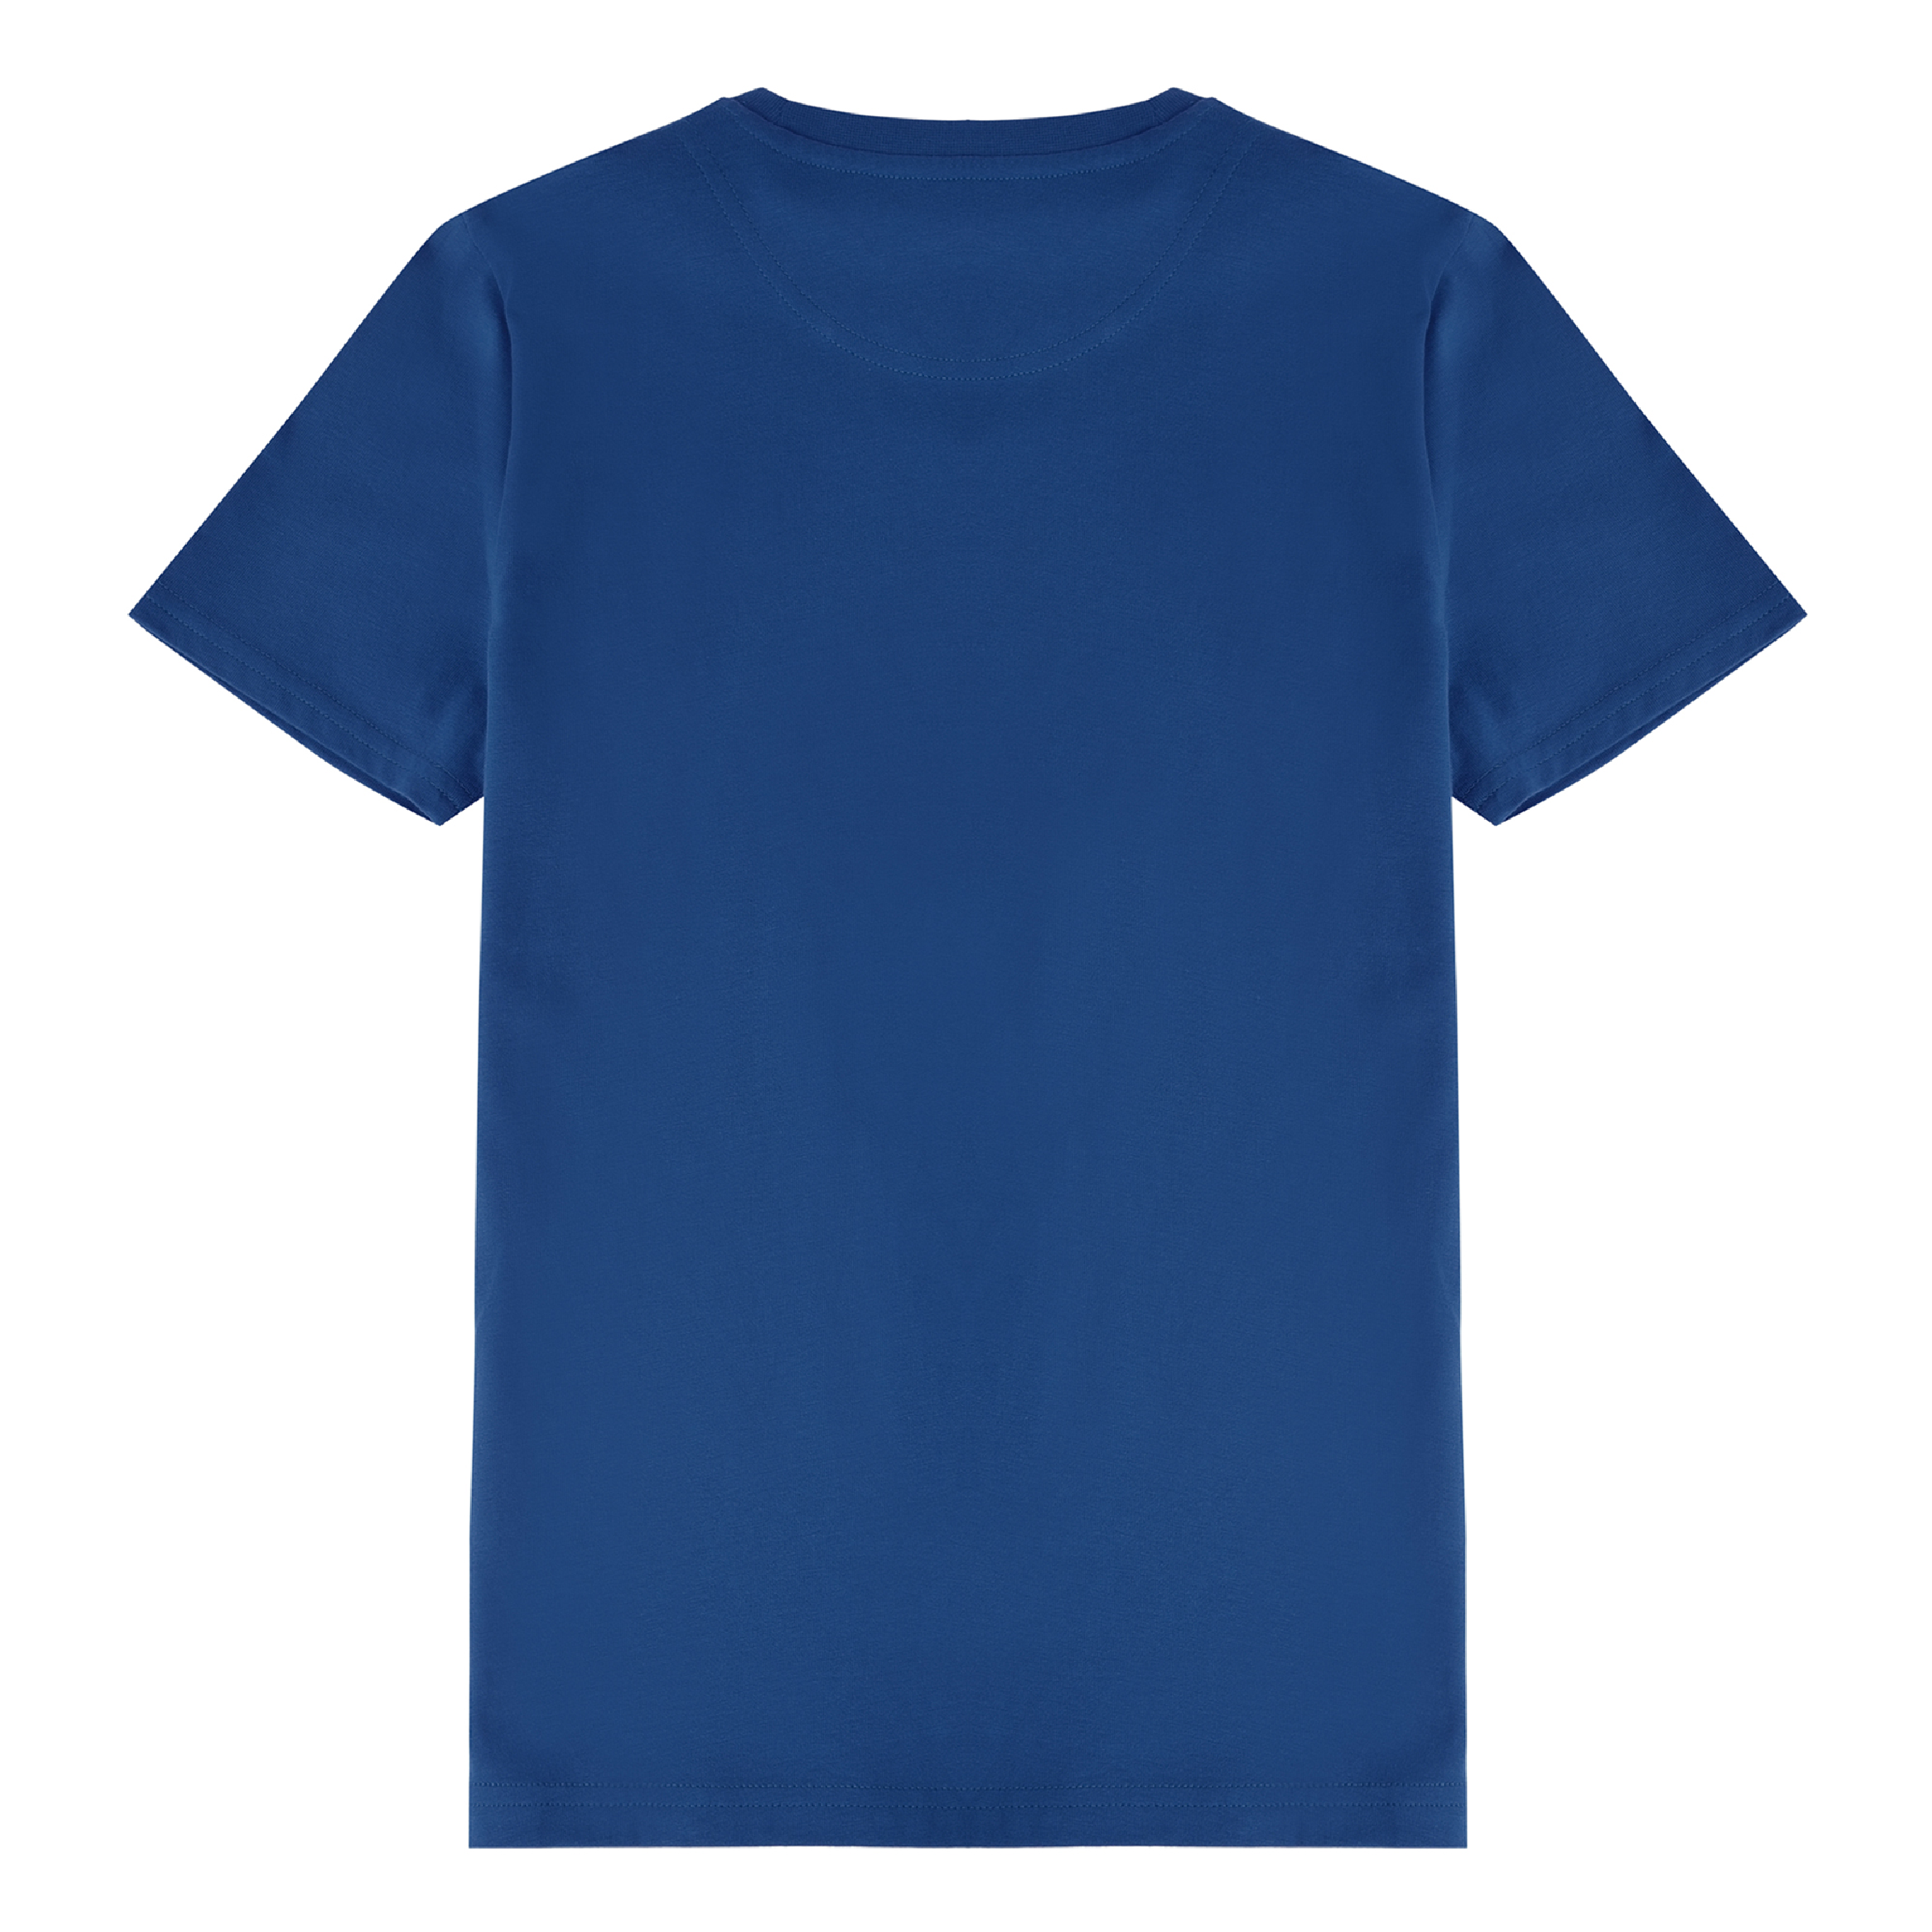 Jongens Classic T-Shirt Estate Blue van Lyle & Scott in de kleur Estate Blue in maat 170-176.